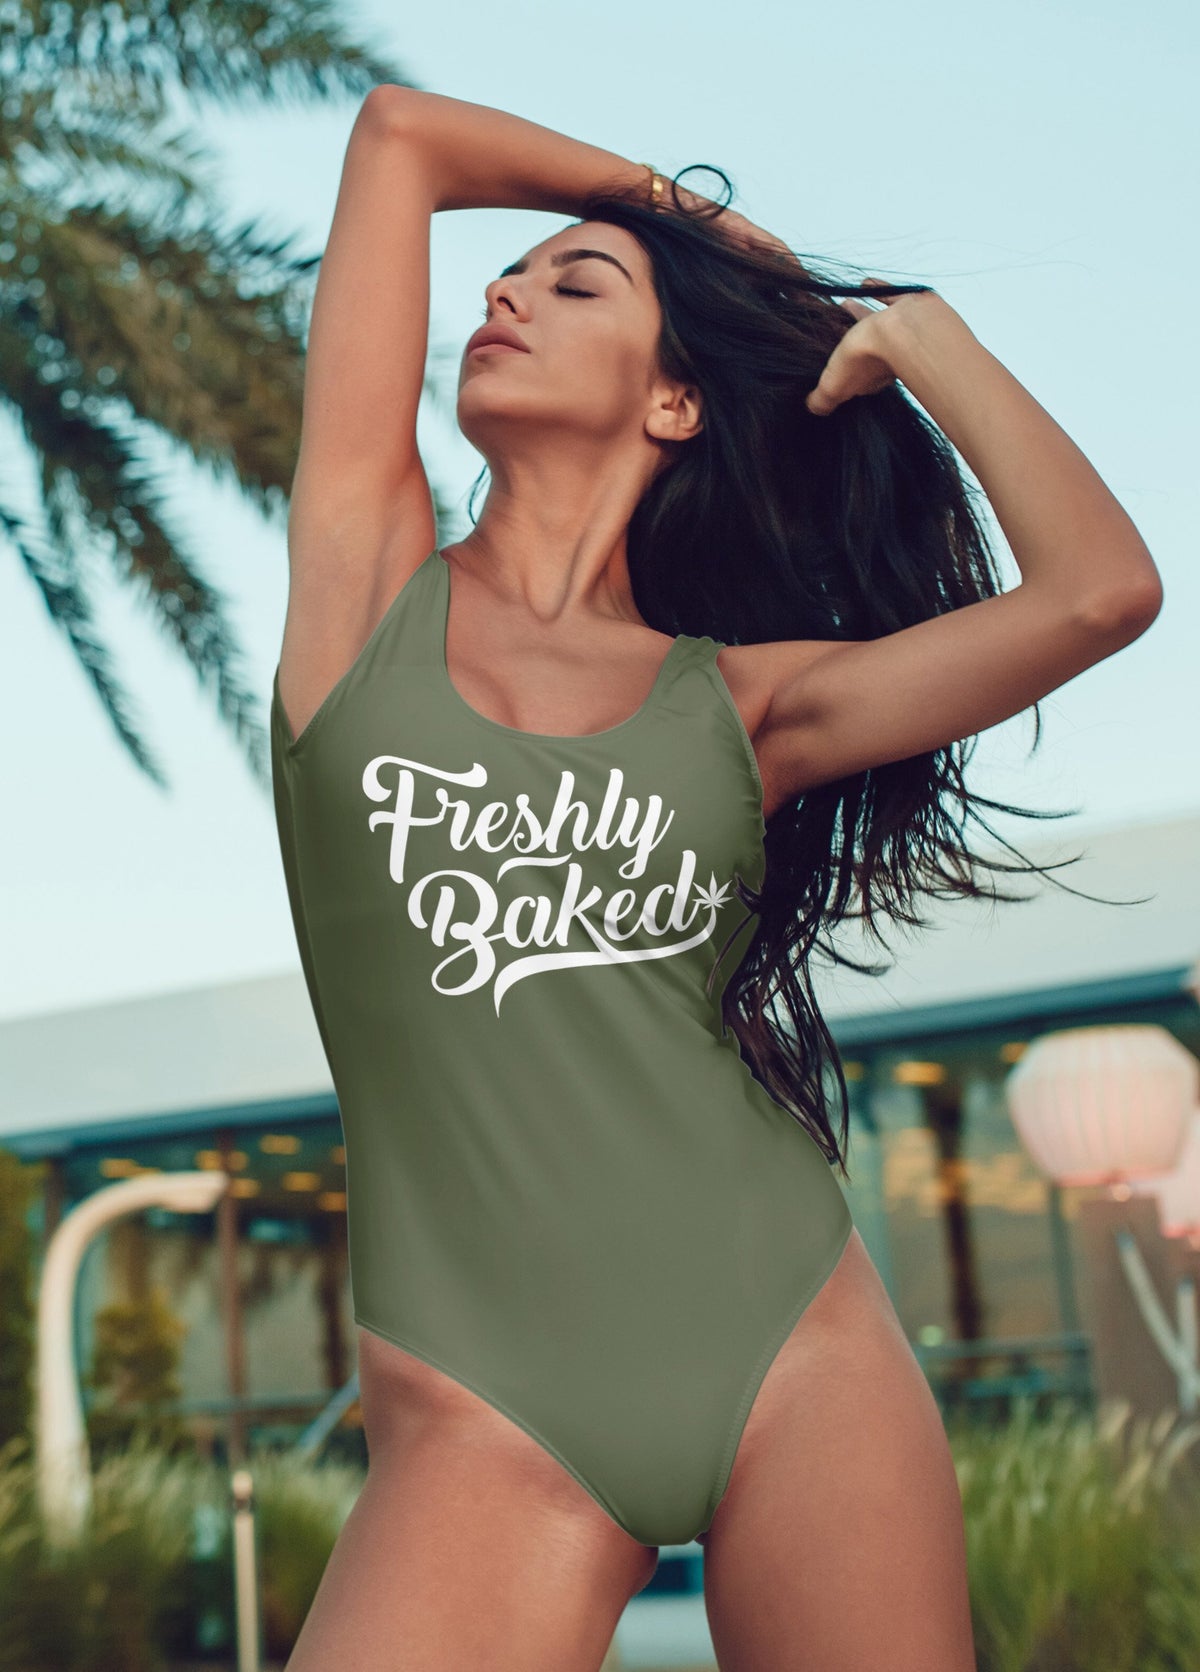 Olive swimsuit saying freshly baked - HighCiti